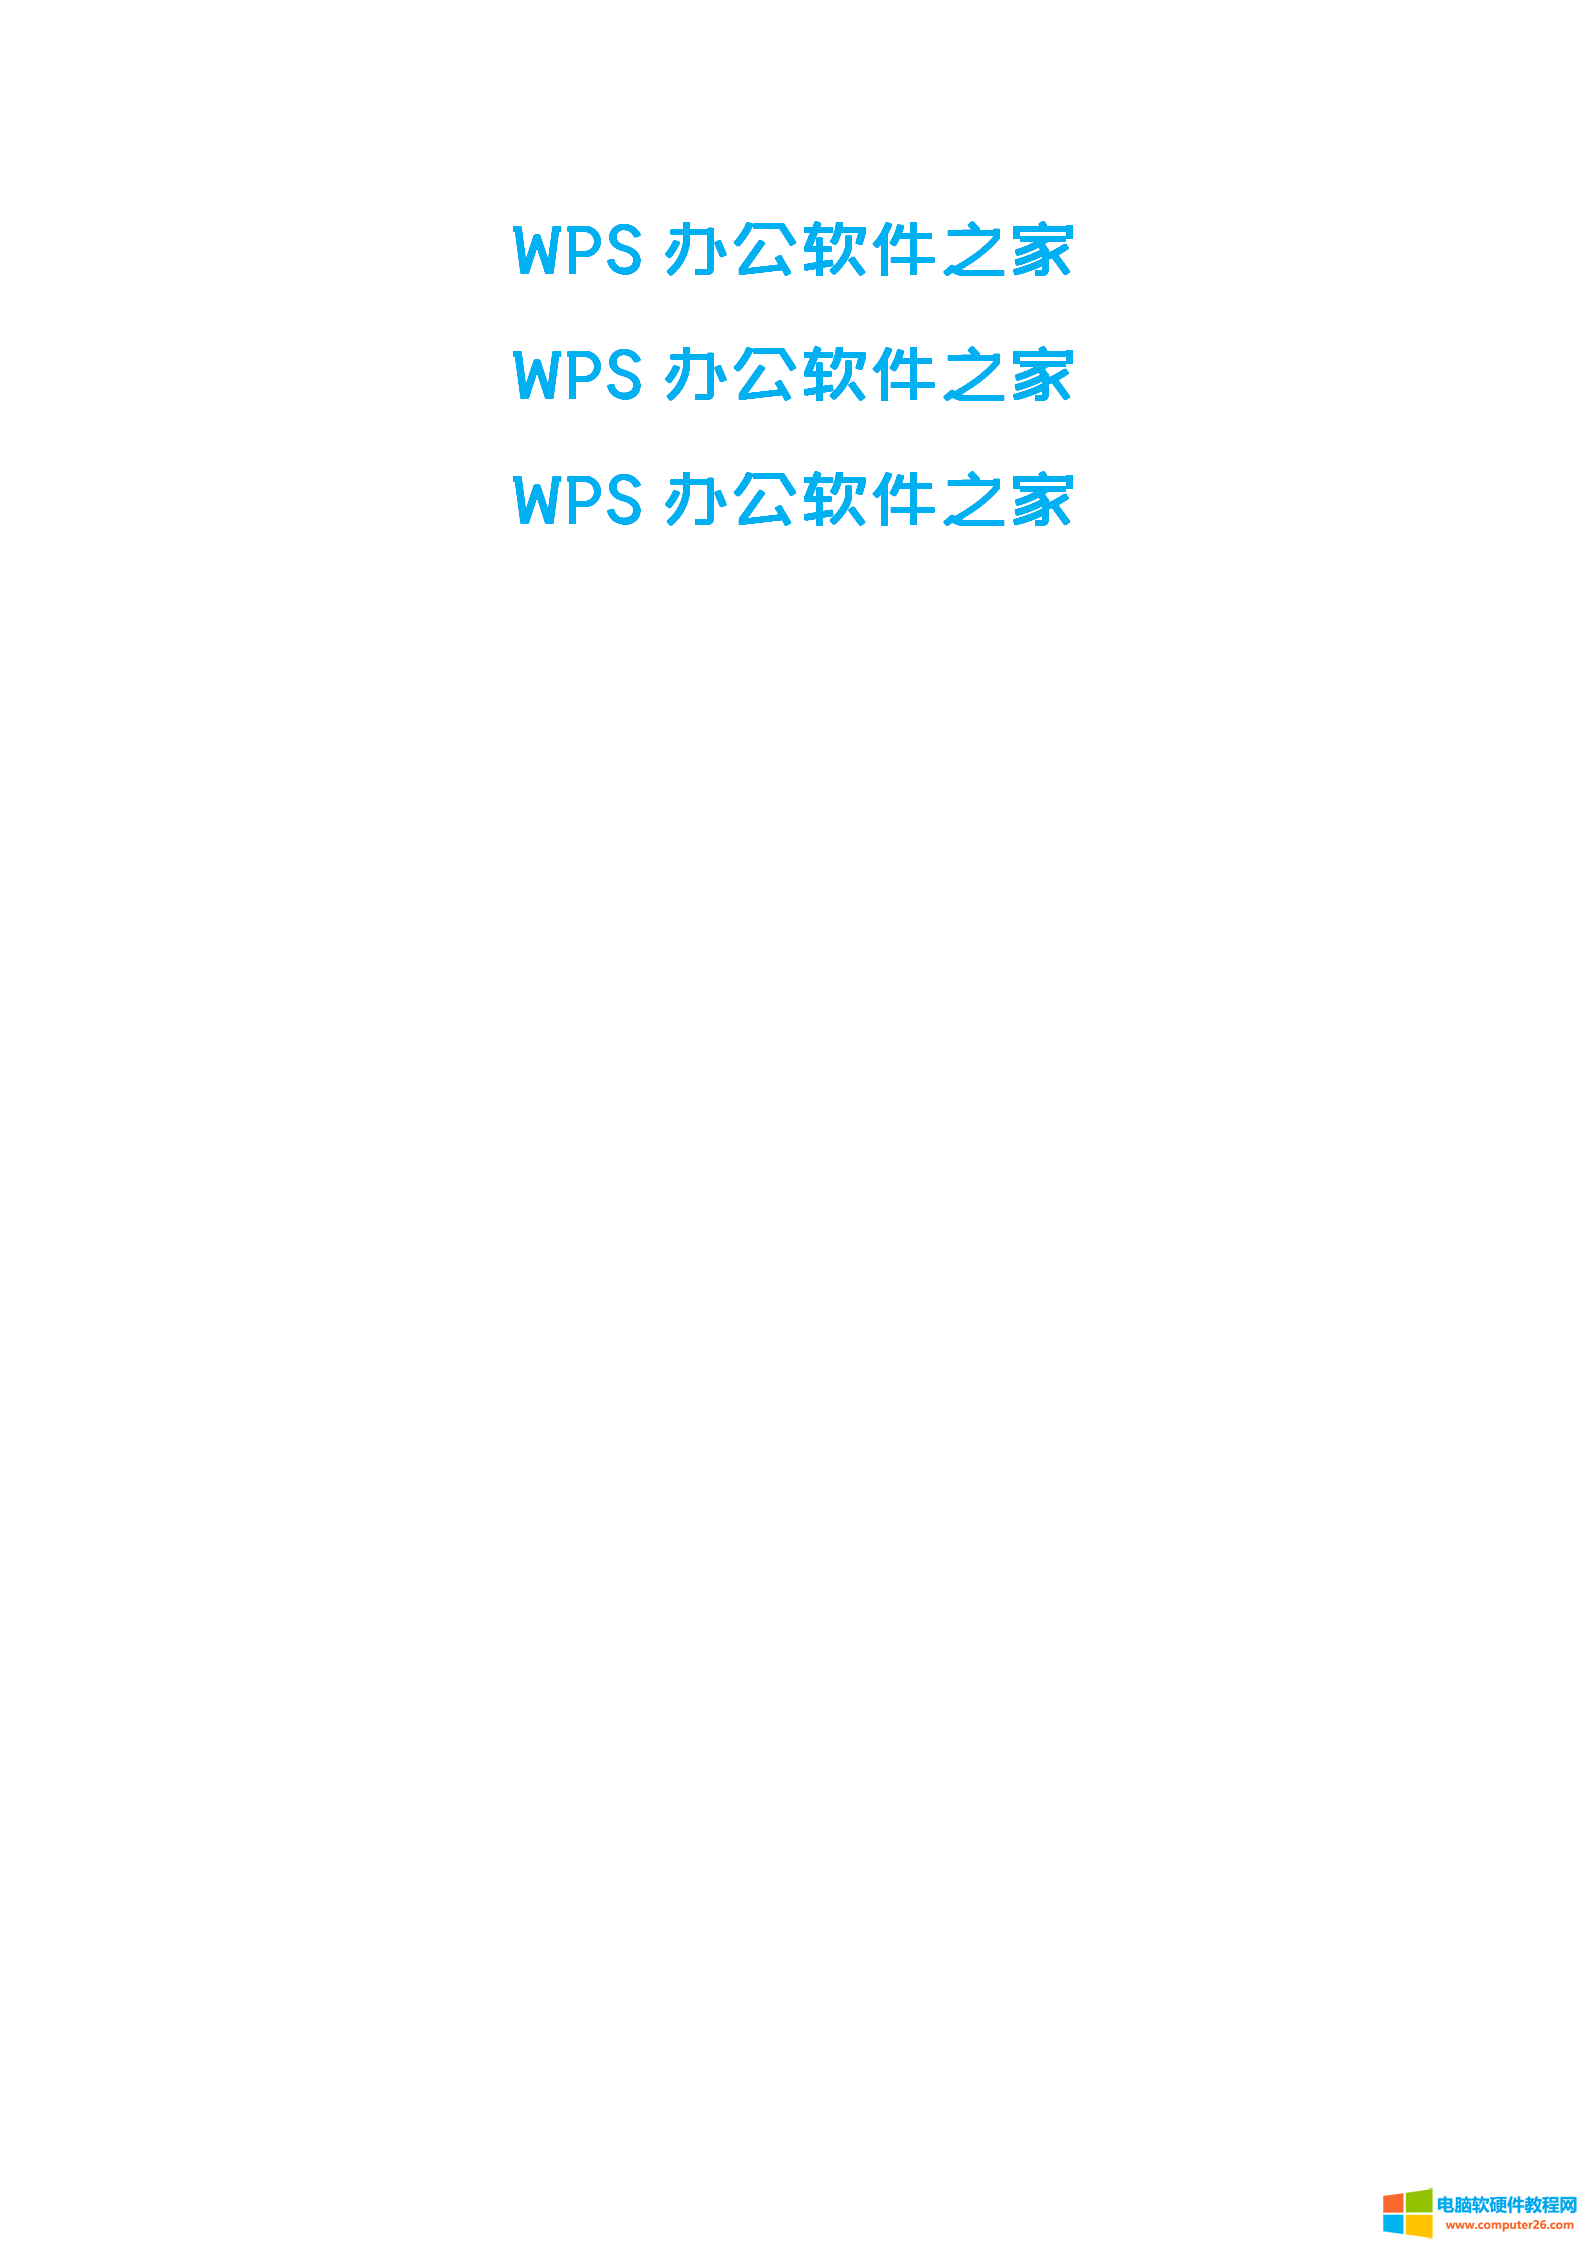 vword/WPS文字快速删除空格和空段的方法_word/WPS删除空格和空段4